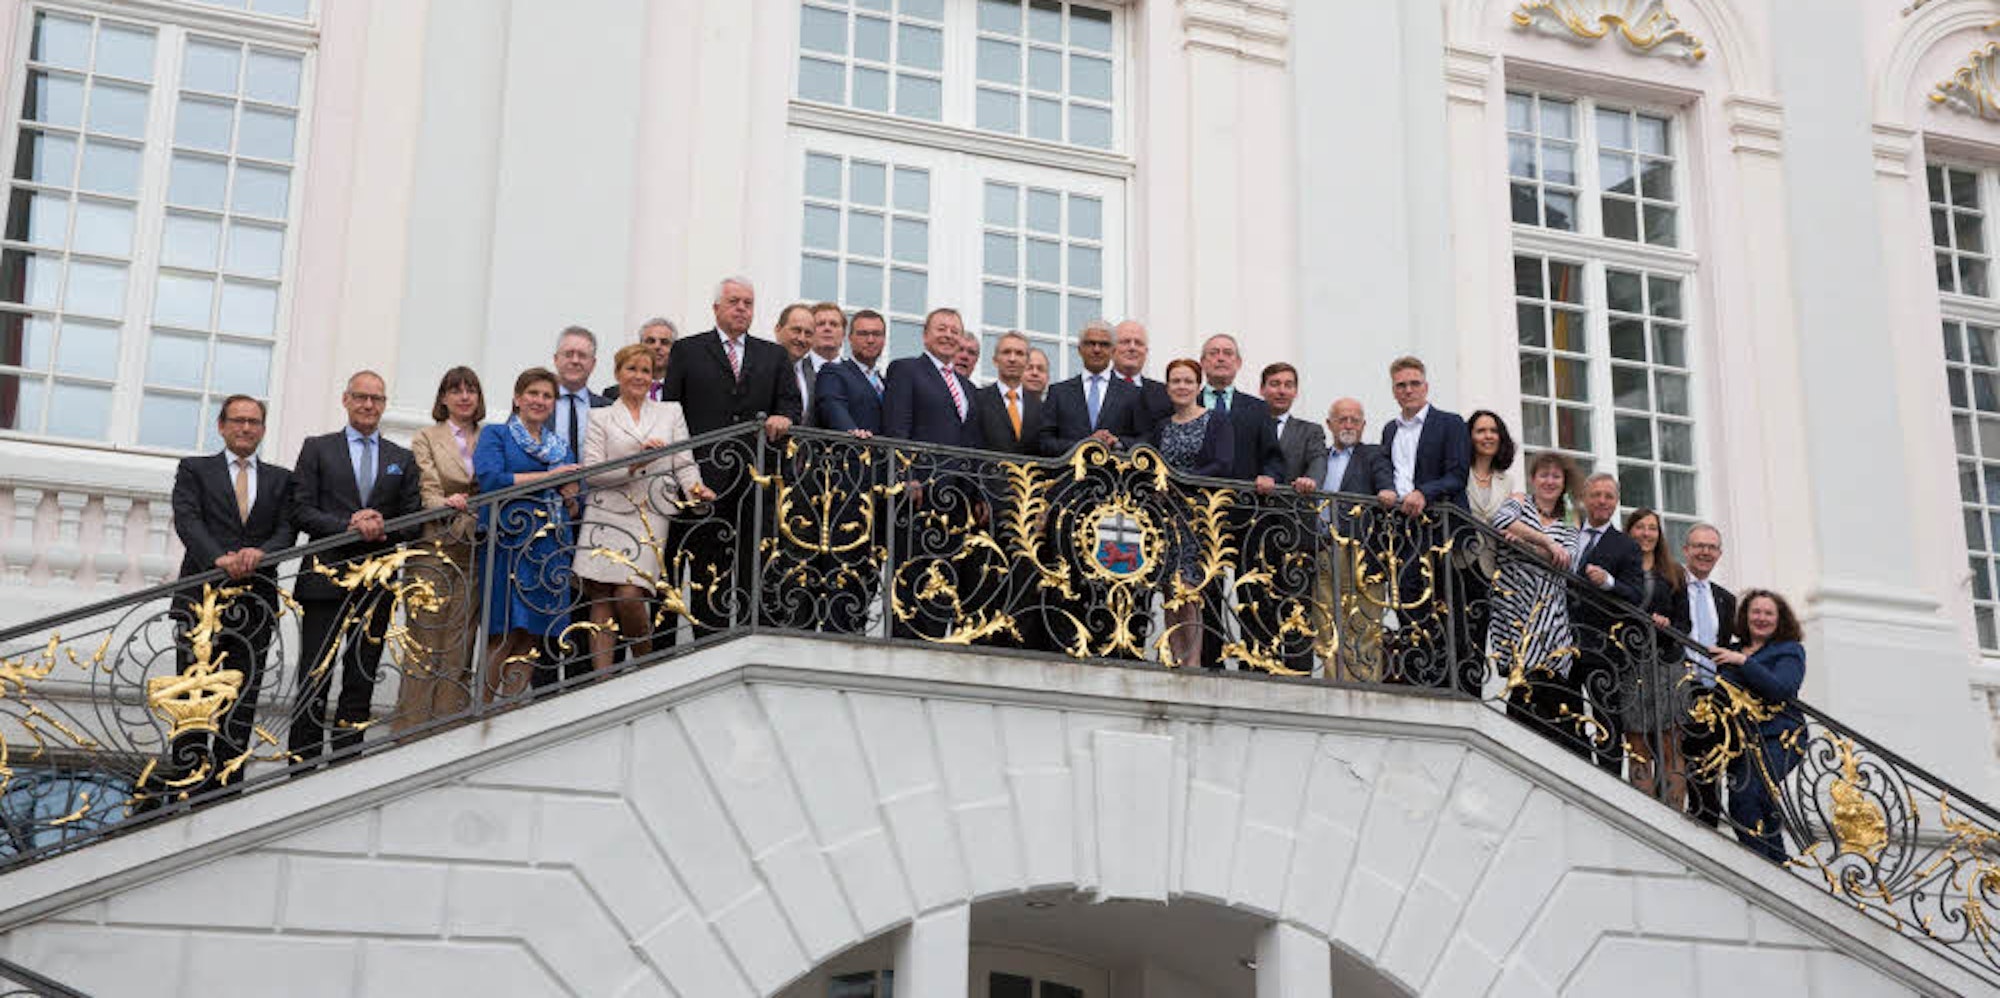 Vereint auf der Treppe: Die Vertreter der Region nach dem Arbeitstreffen im Alten Rathaus.